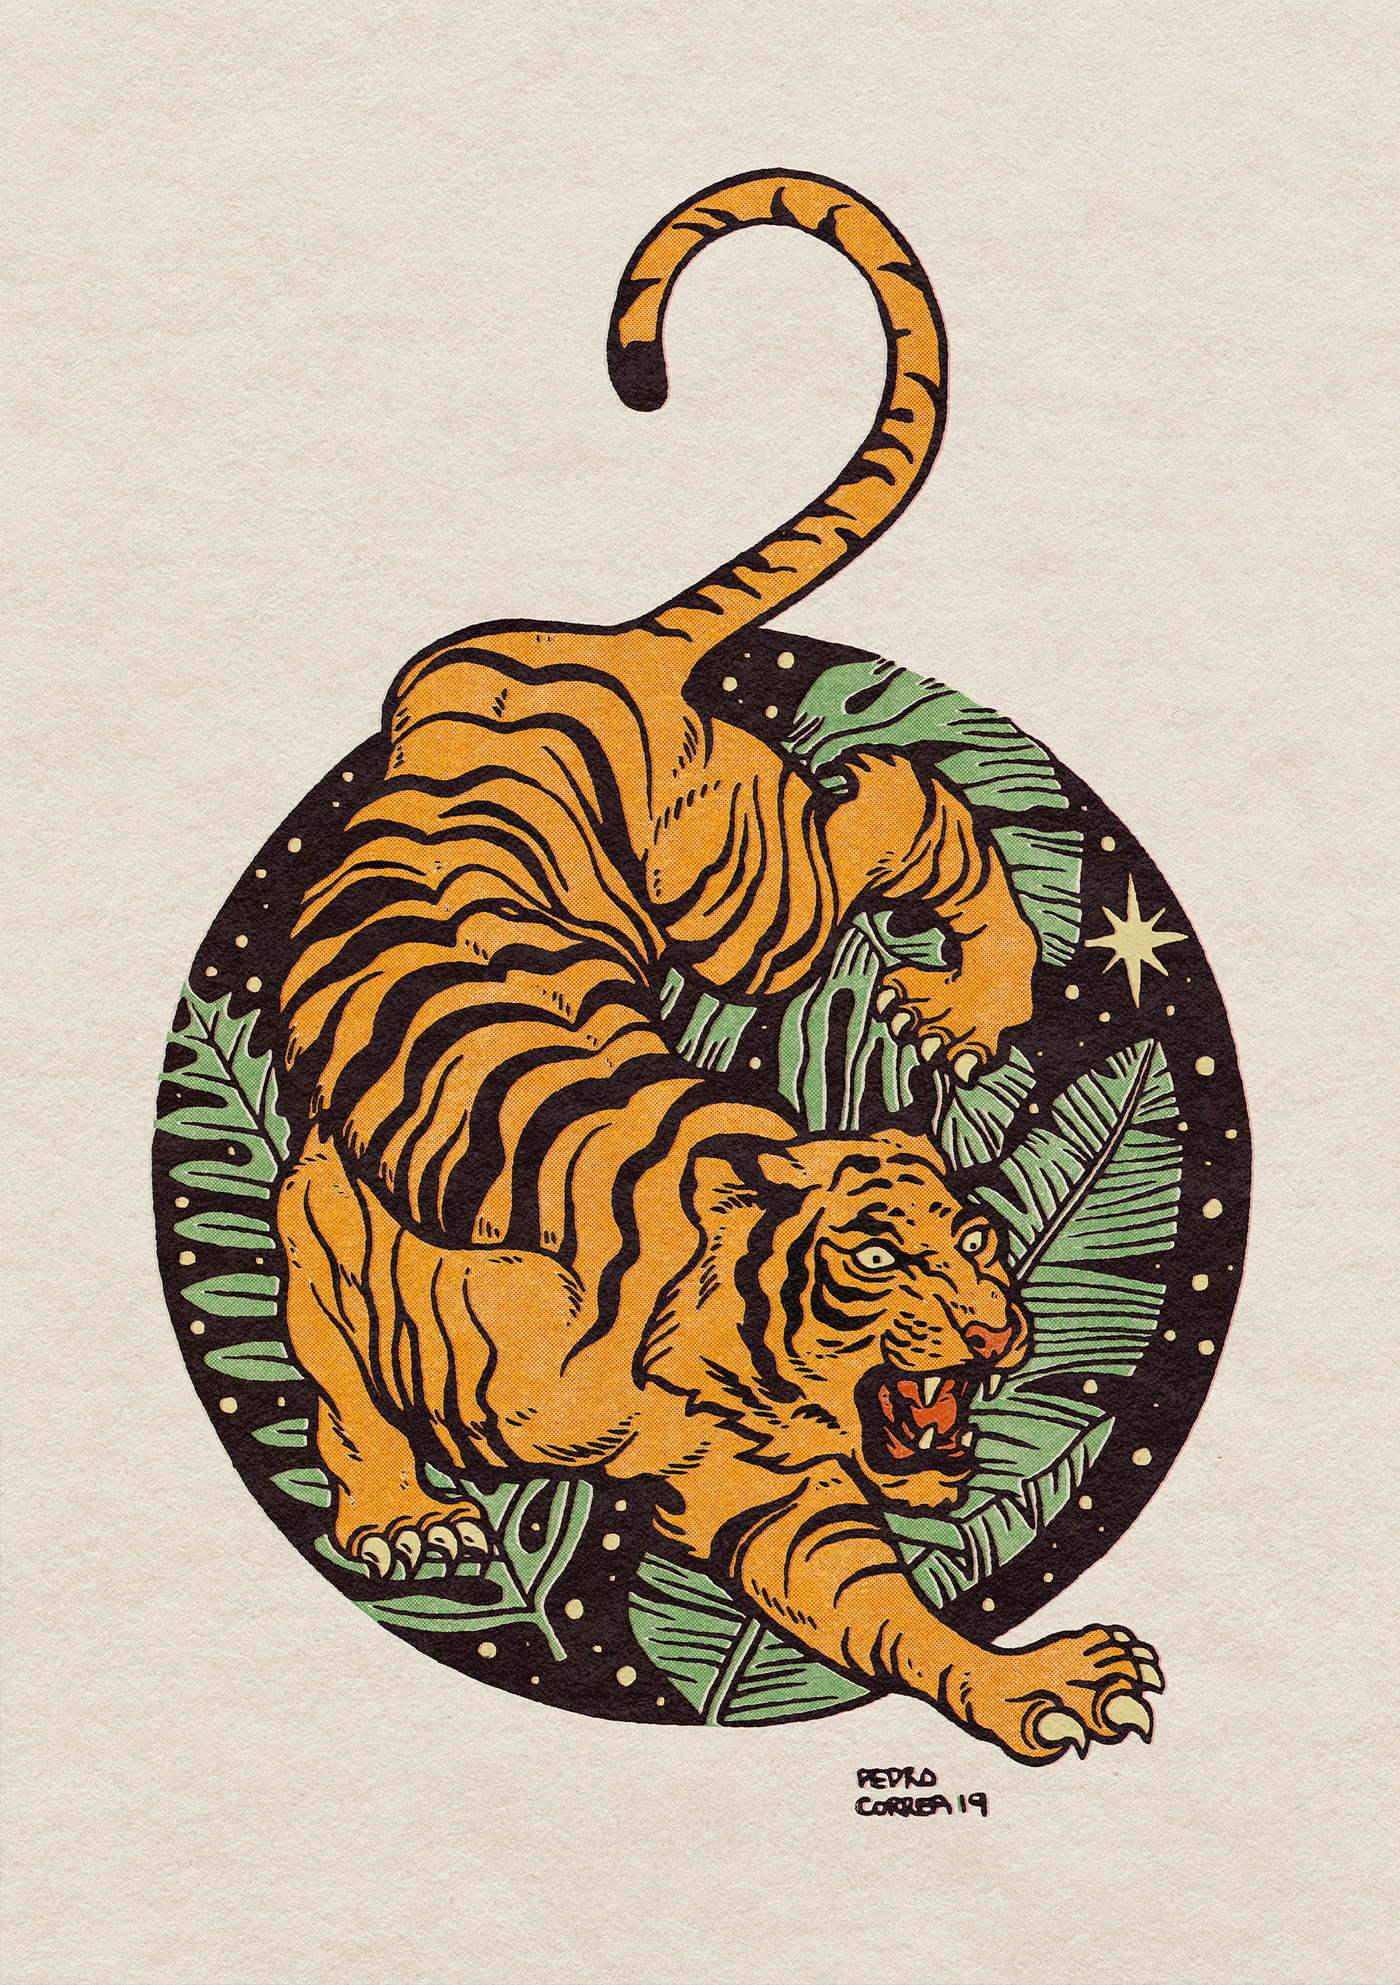 ink sketchbook traditional illustration tattoo tiger panther Space  skull vintage Retro